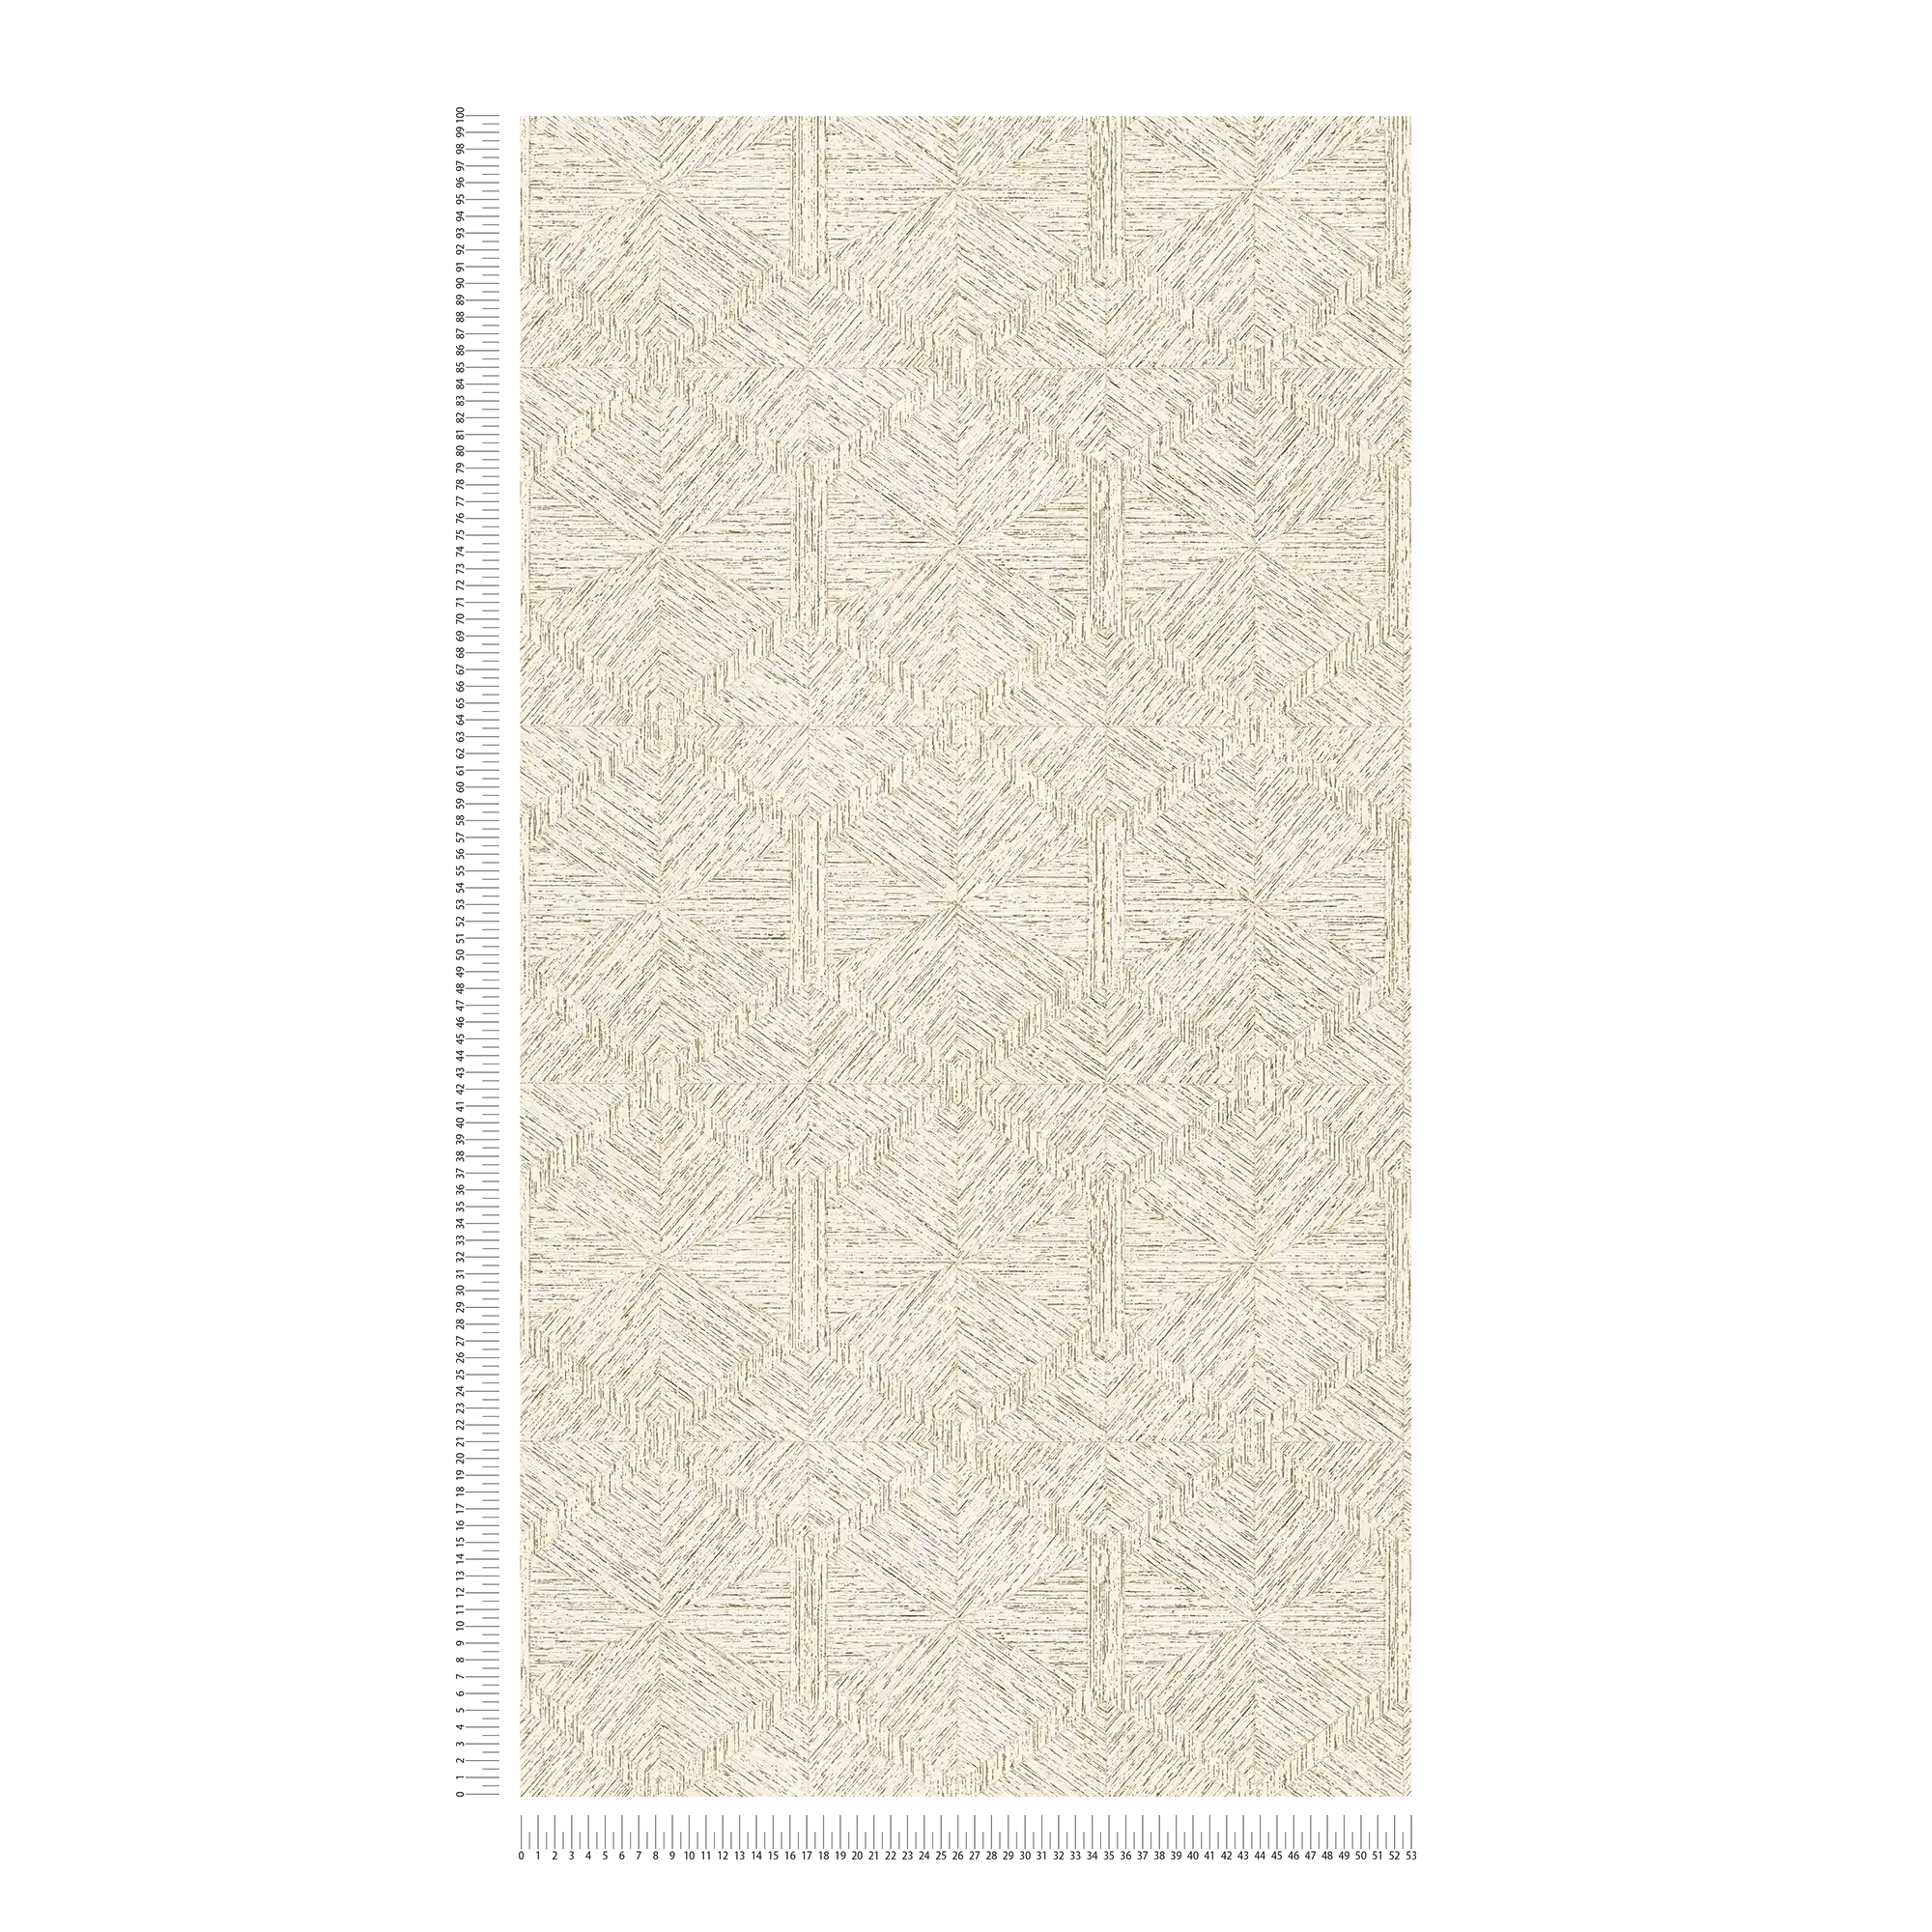             Graphic pattern wallpaper with wood look design - beige, metallic
        